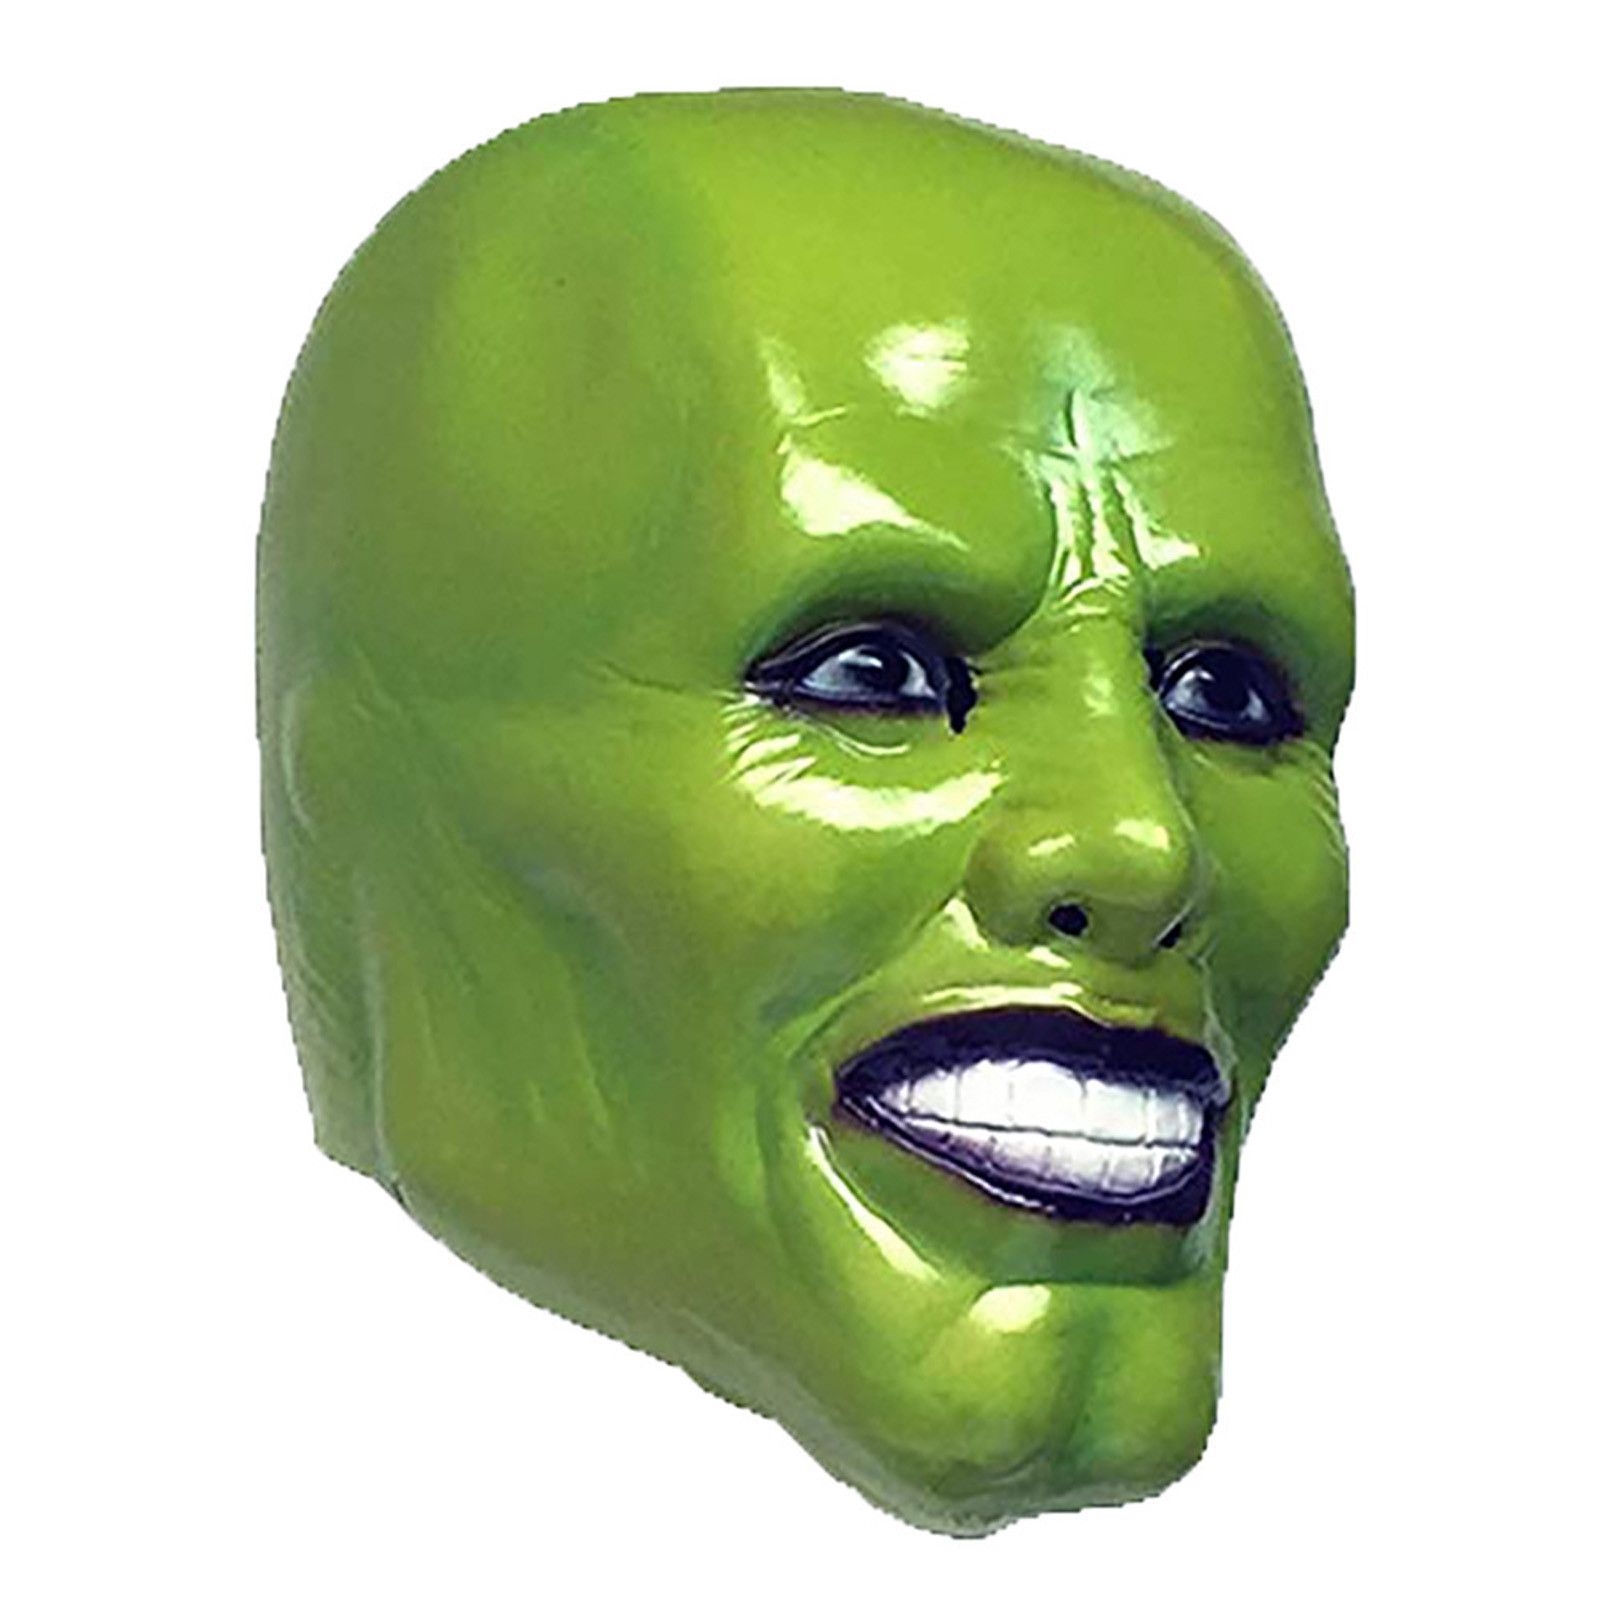 Человек зеленая маска. Джим Керри маска. Jim Carrey зеленая маска. Резиновая маска Джима Керри. Косплей маска Джим Керри.